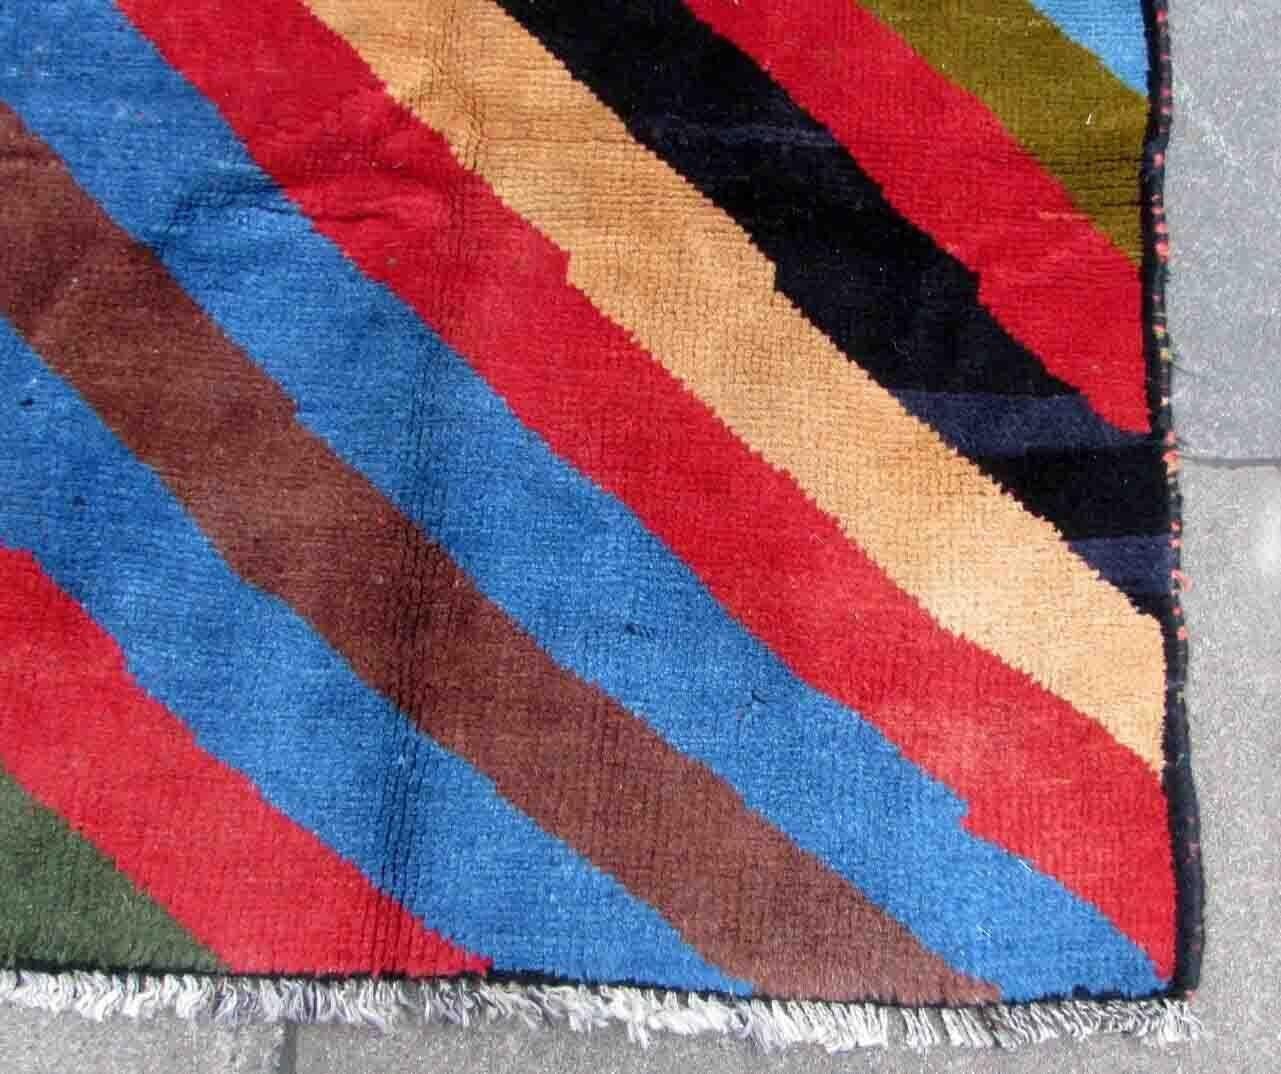 Handgefertigter Gabbeh-Teppich in farbenfrohem geometrischem Streifendesign. Der Teppich stammt aus dem Ende des 20. Jahrhunderts und ist in gutem Originalzustand.

-Zustand: original gut,

-Umgebung: 1970er Jahre,

-Größe: 3,8' x 4,8' (117cm x